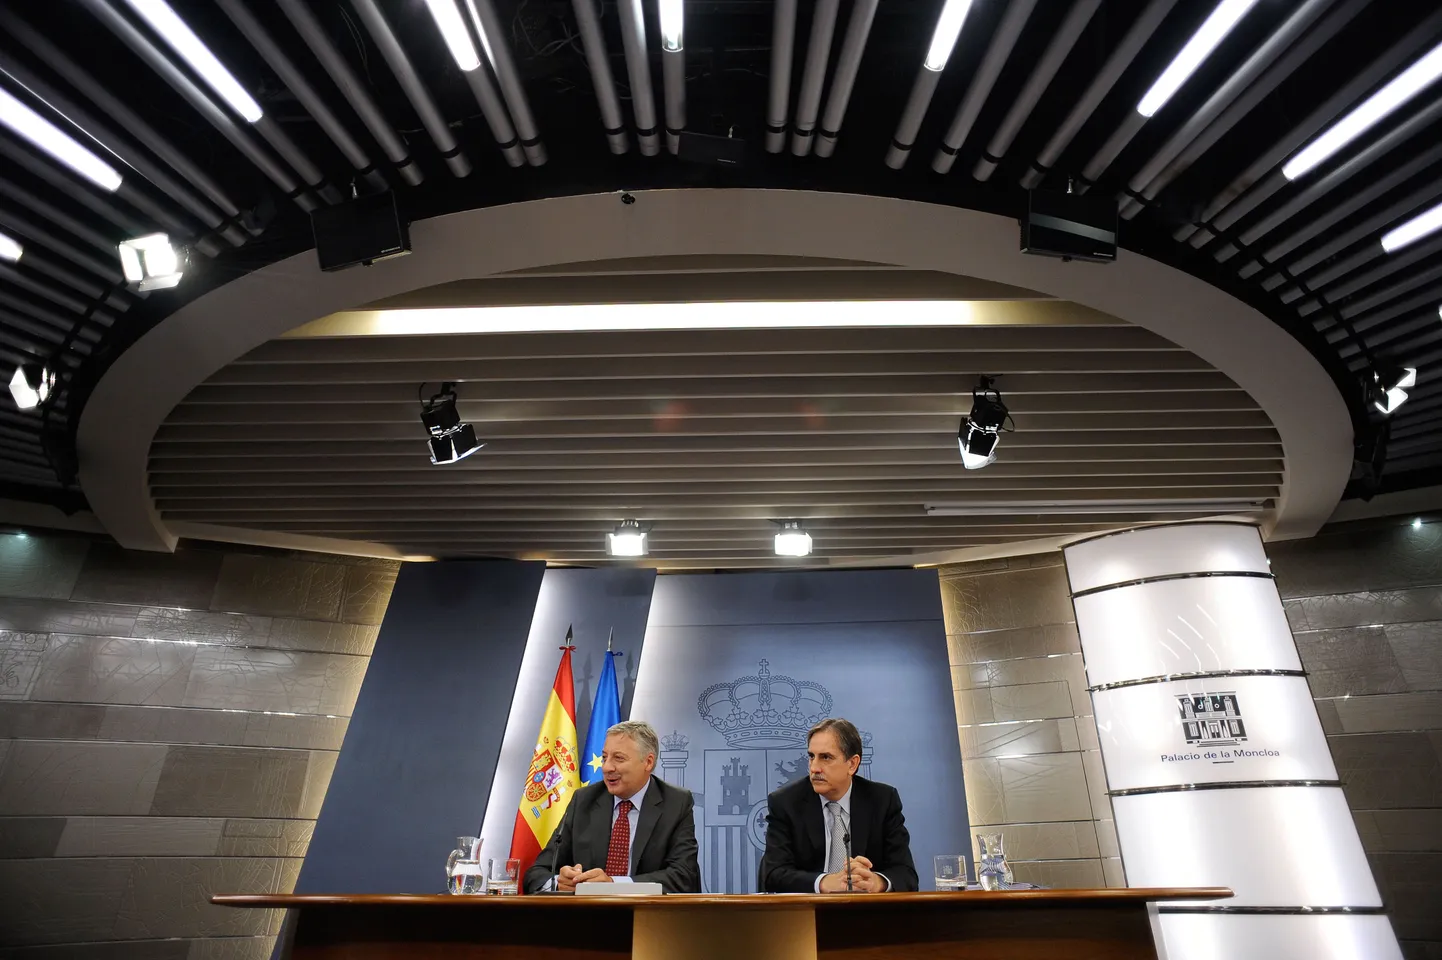 26. augustil peetud pressikonverents, kus Hispaania valitsuse esindajad kokkuleppest piirata riigivõlga ja eelarvepuudujääki. Pildil töö- ja immigratsiooniminister Valeriano Gomez (paremal) ning transpordi- ja arenguminister Jose Blanco.